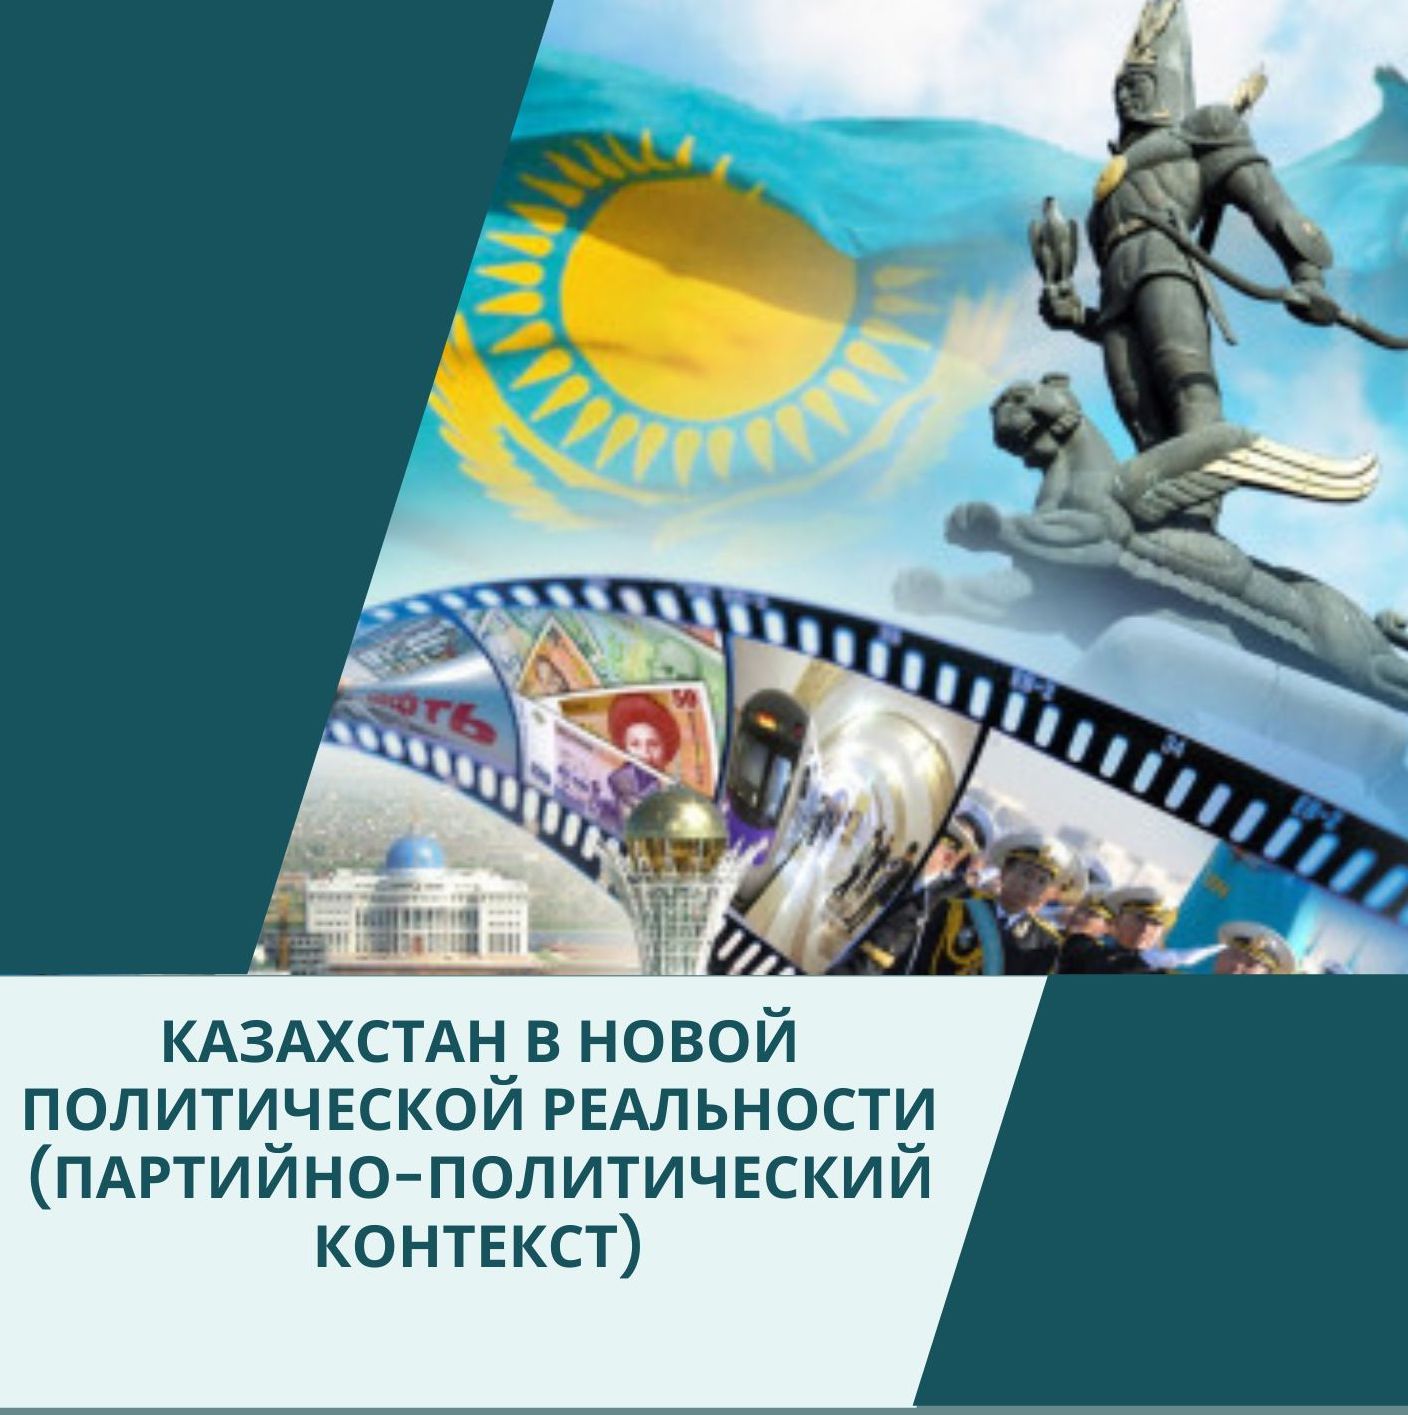 Аналитический доклад: Казахстан в новой политической реальности